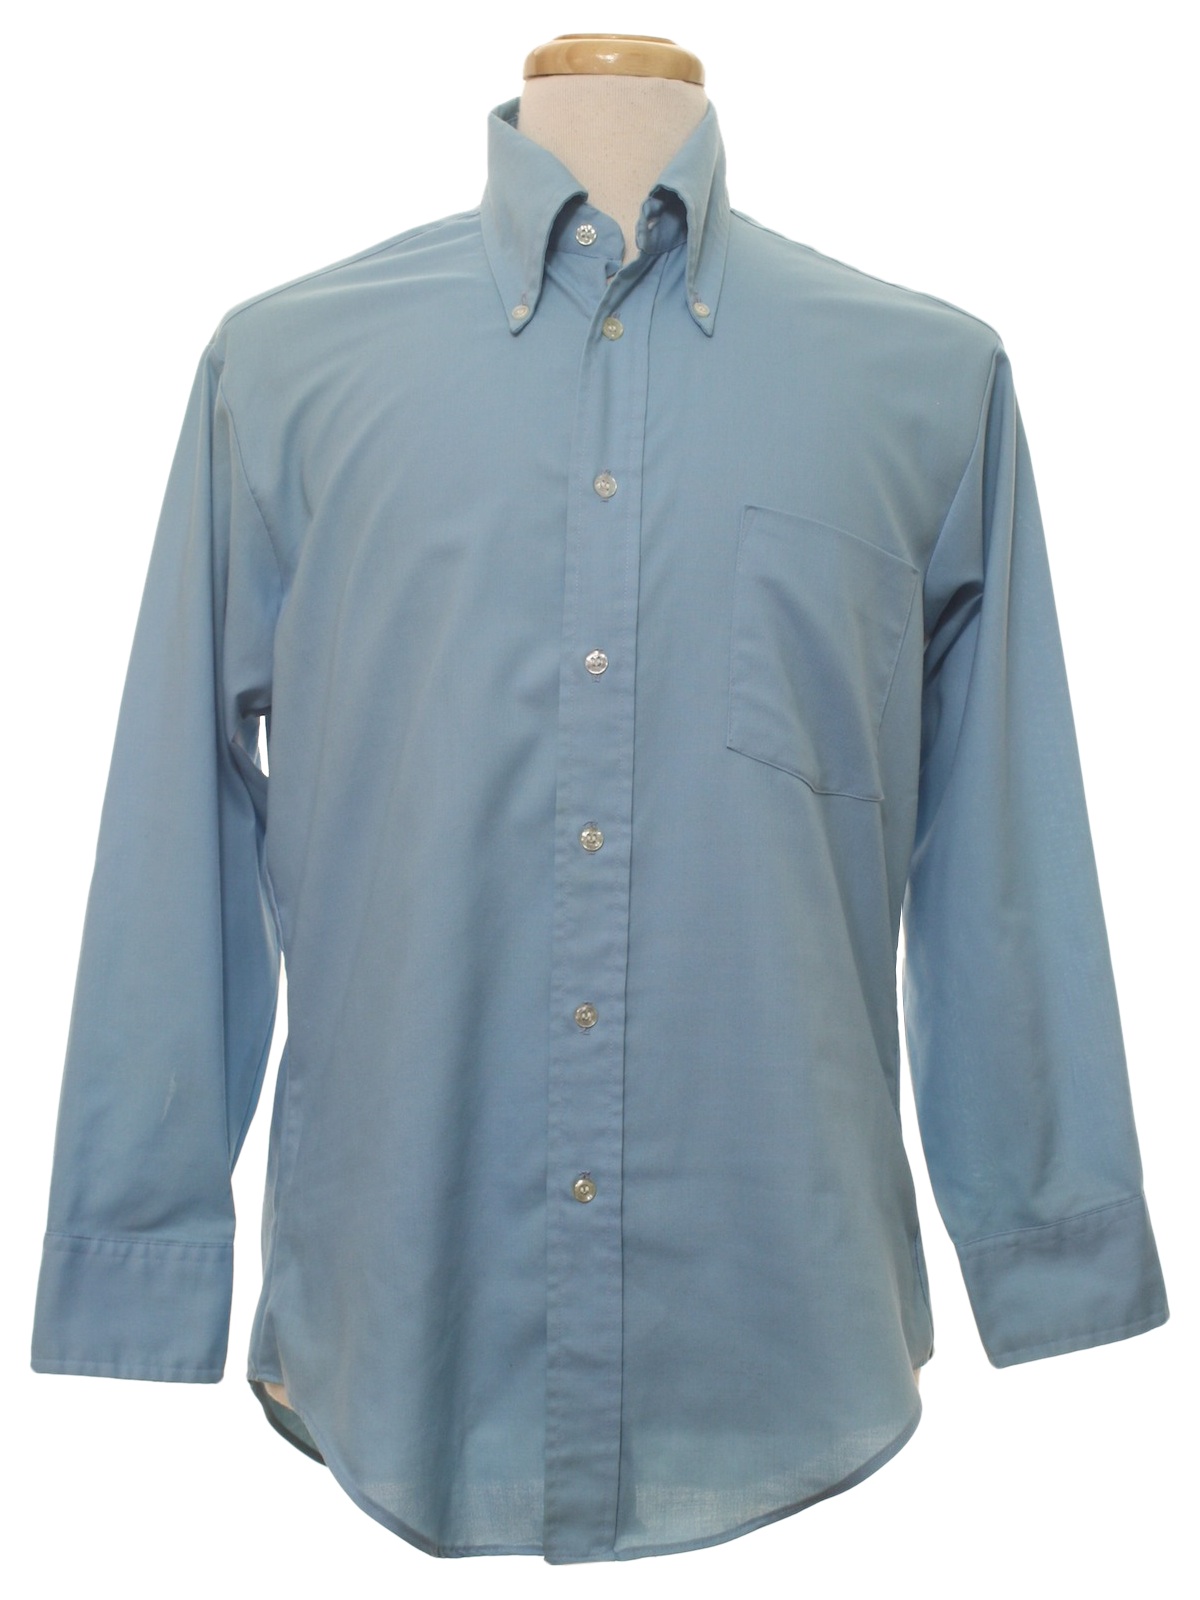 Retro Seventies Shirt: Late 70s -Sears Mens Store- Mens powder blue ...